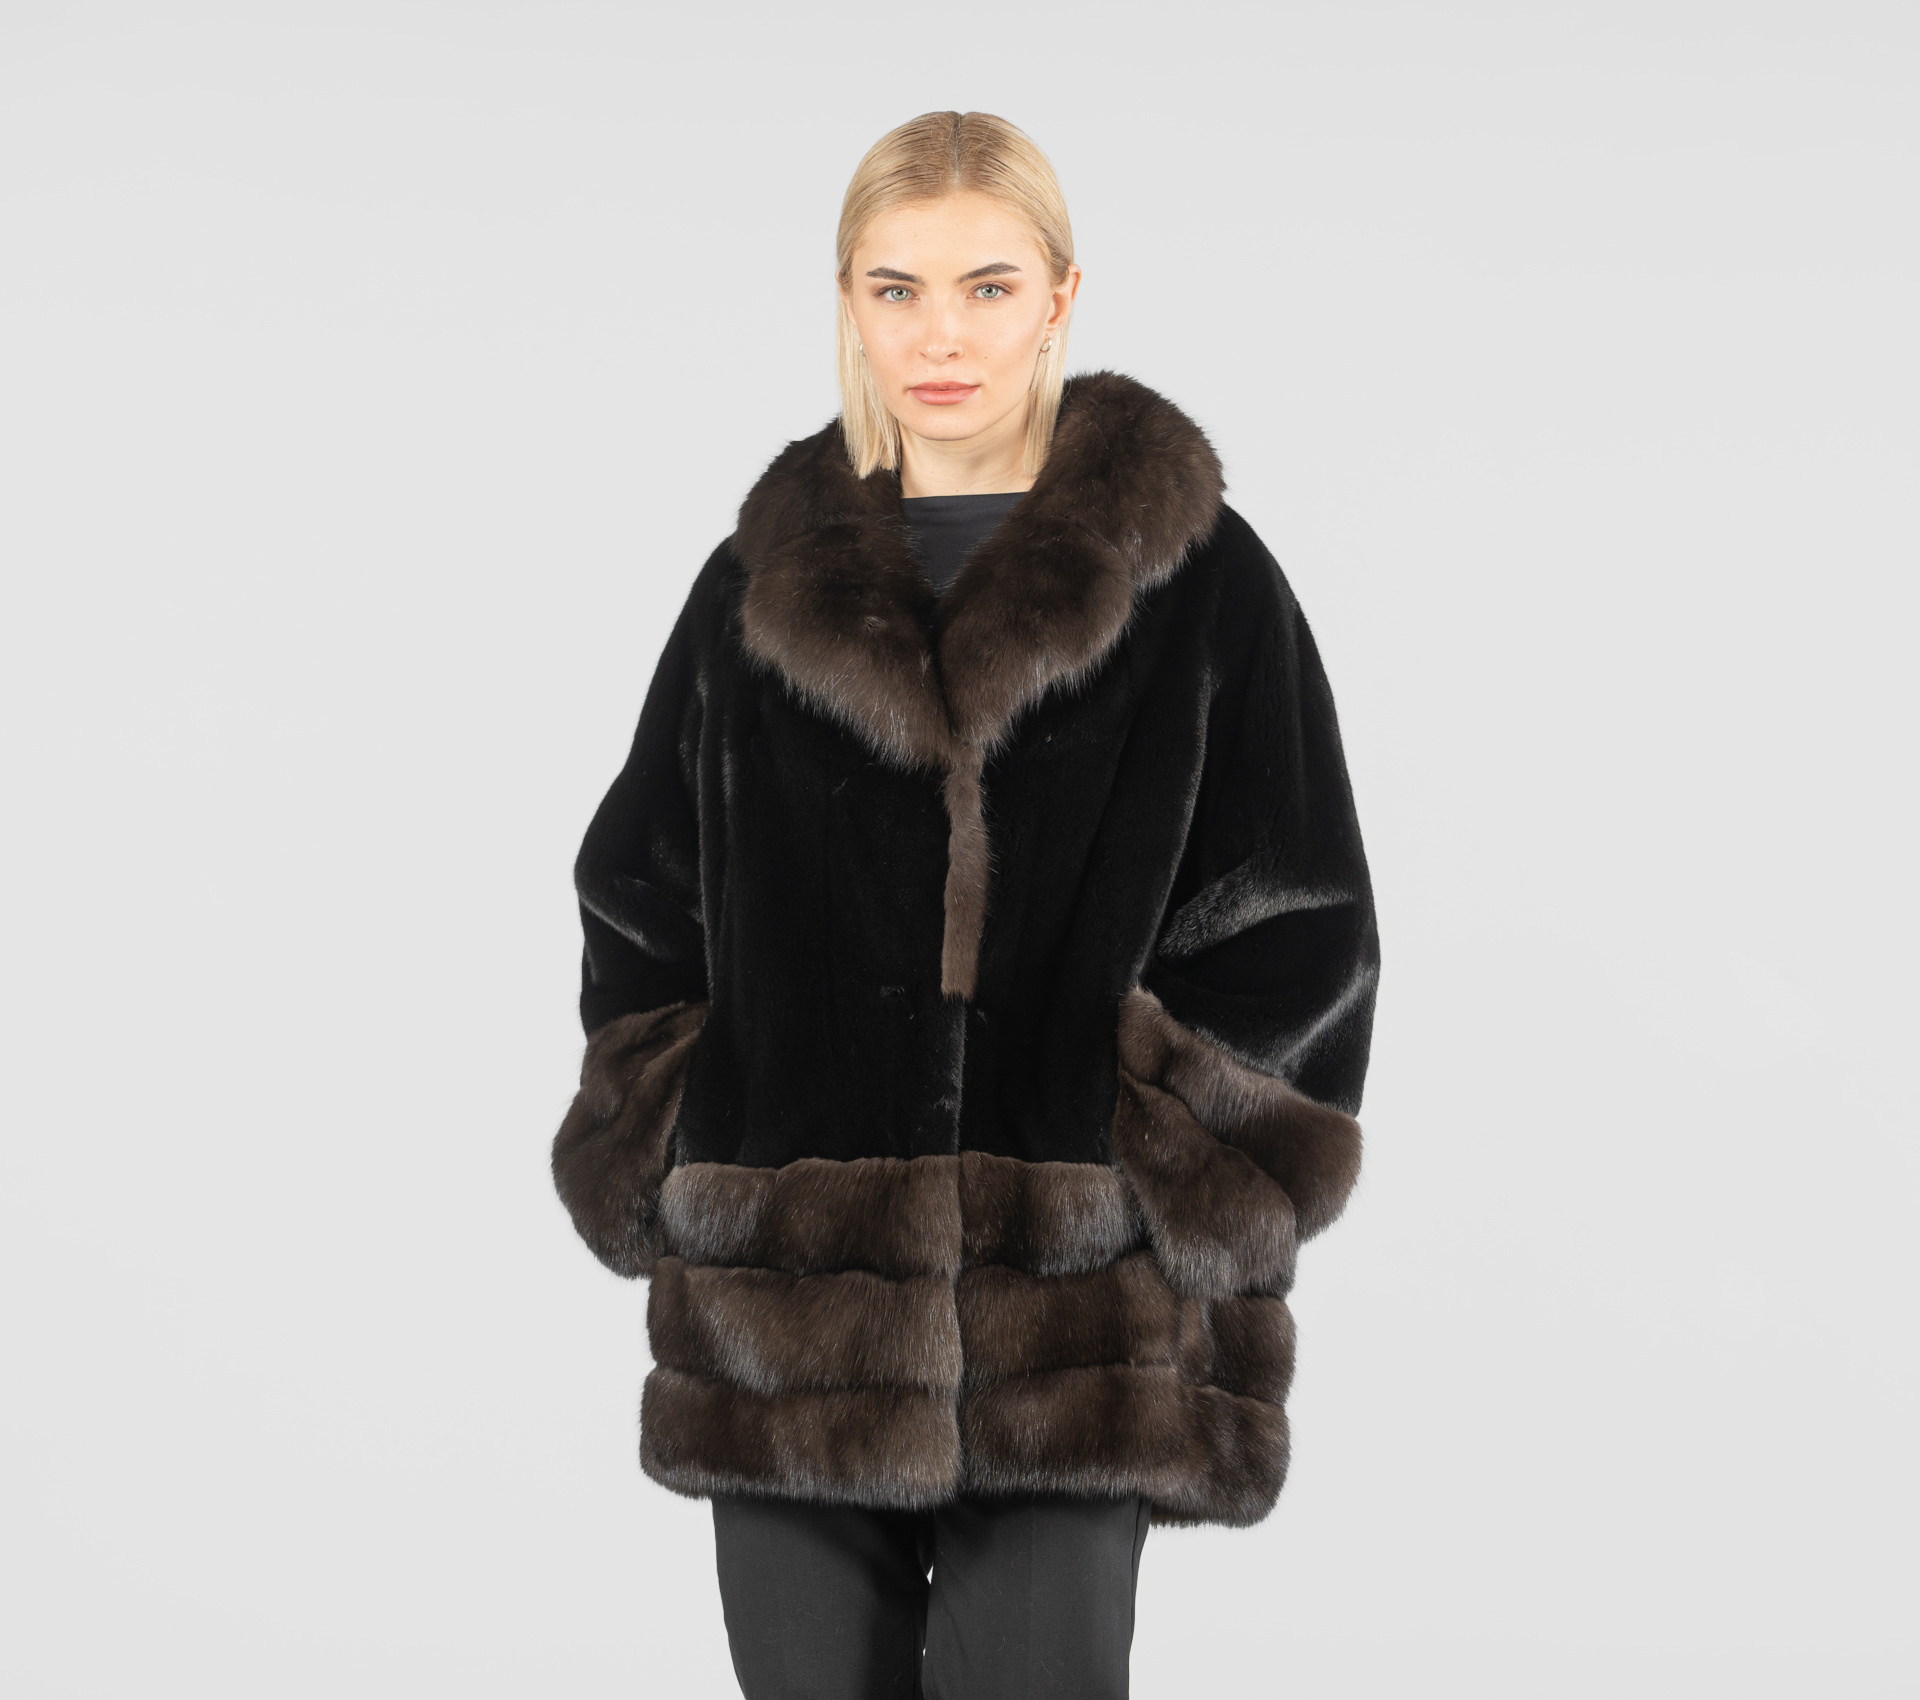 Mink Fur Jacket With Sable Details - 100% Real Fur